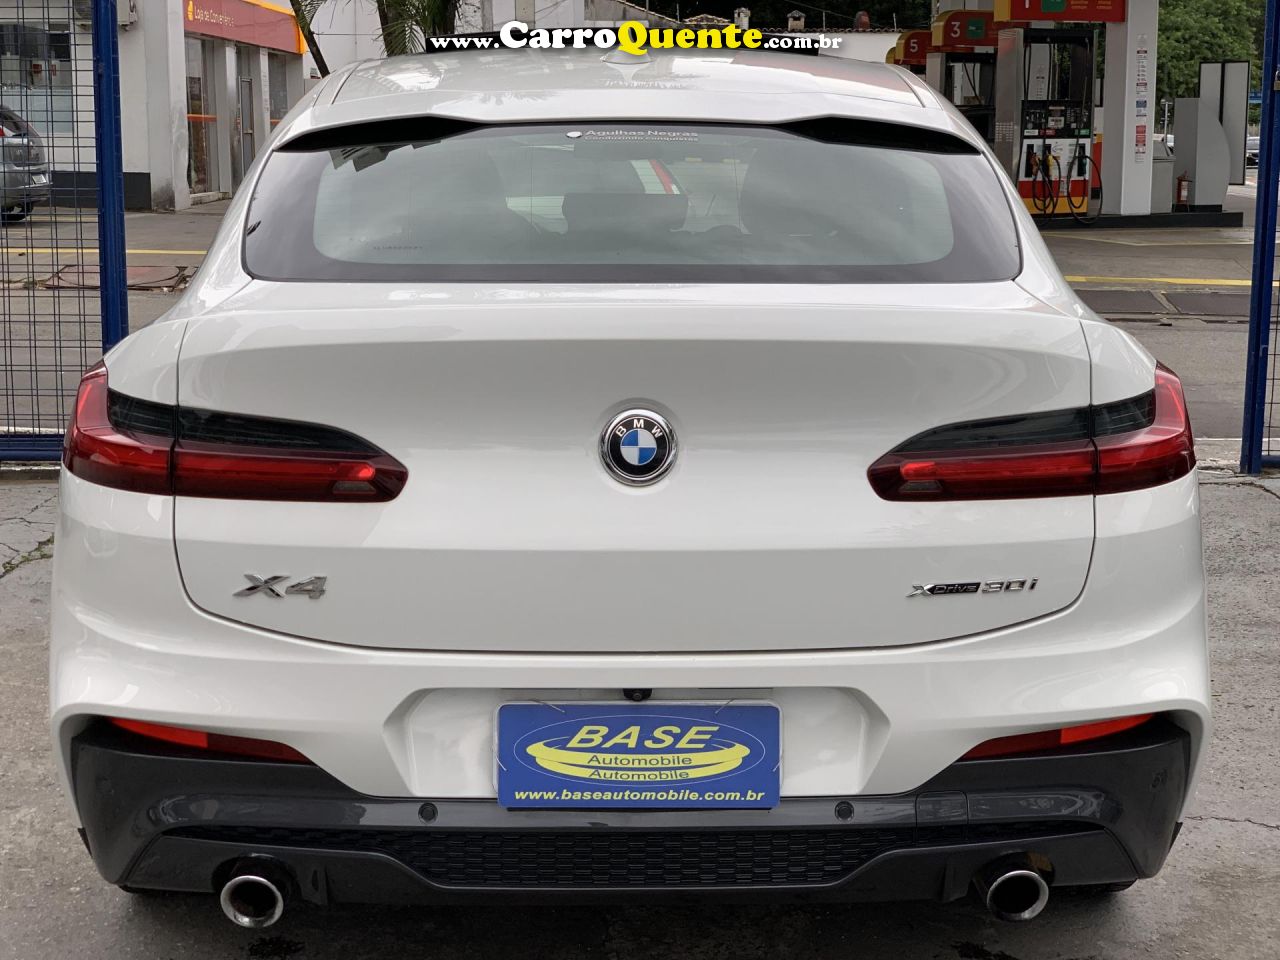 BMW   X4 XDRIVE 30I M-SPORT 2.0 TB. 252CV AUT   BRANCO 2020 2.0 T GASOLINA - Loja